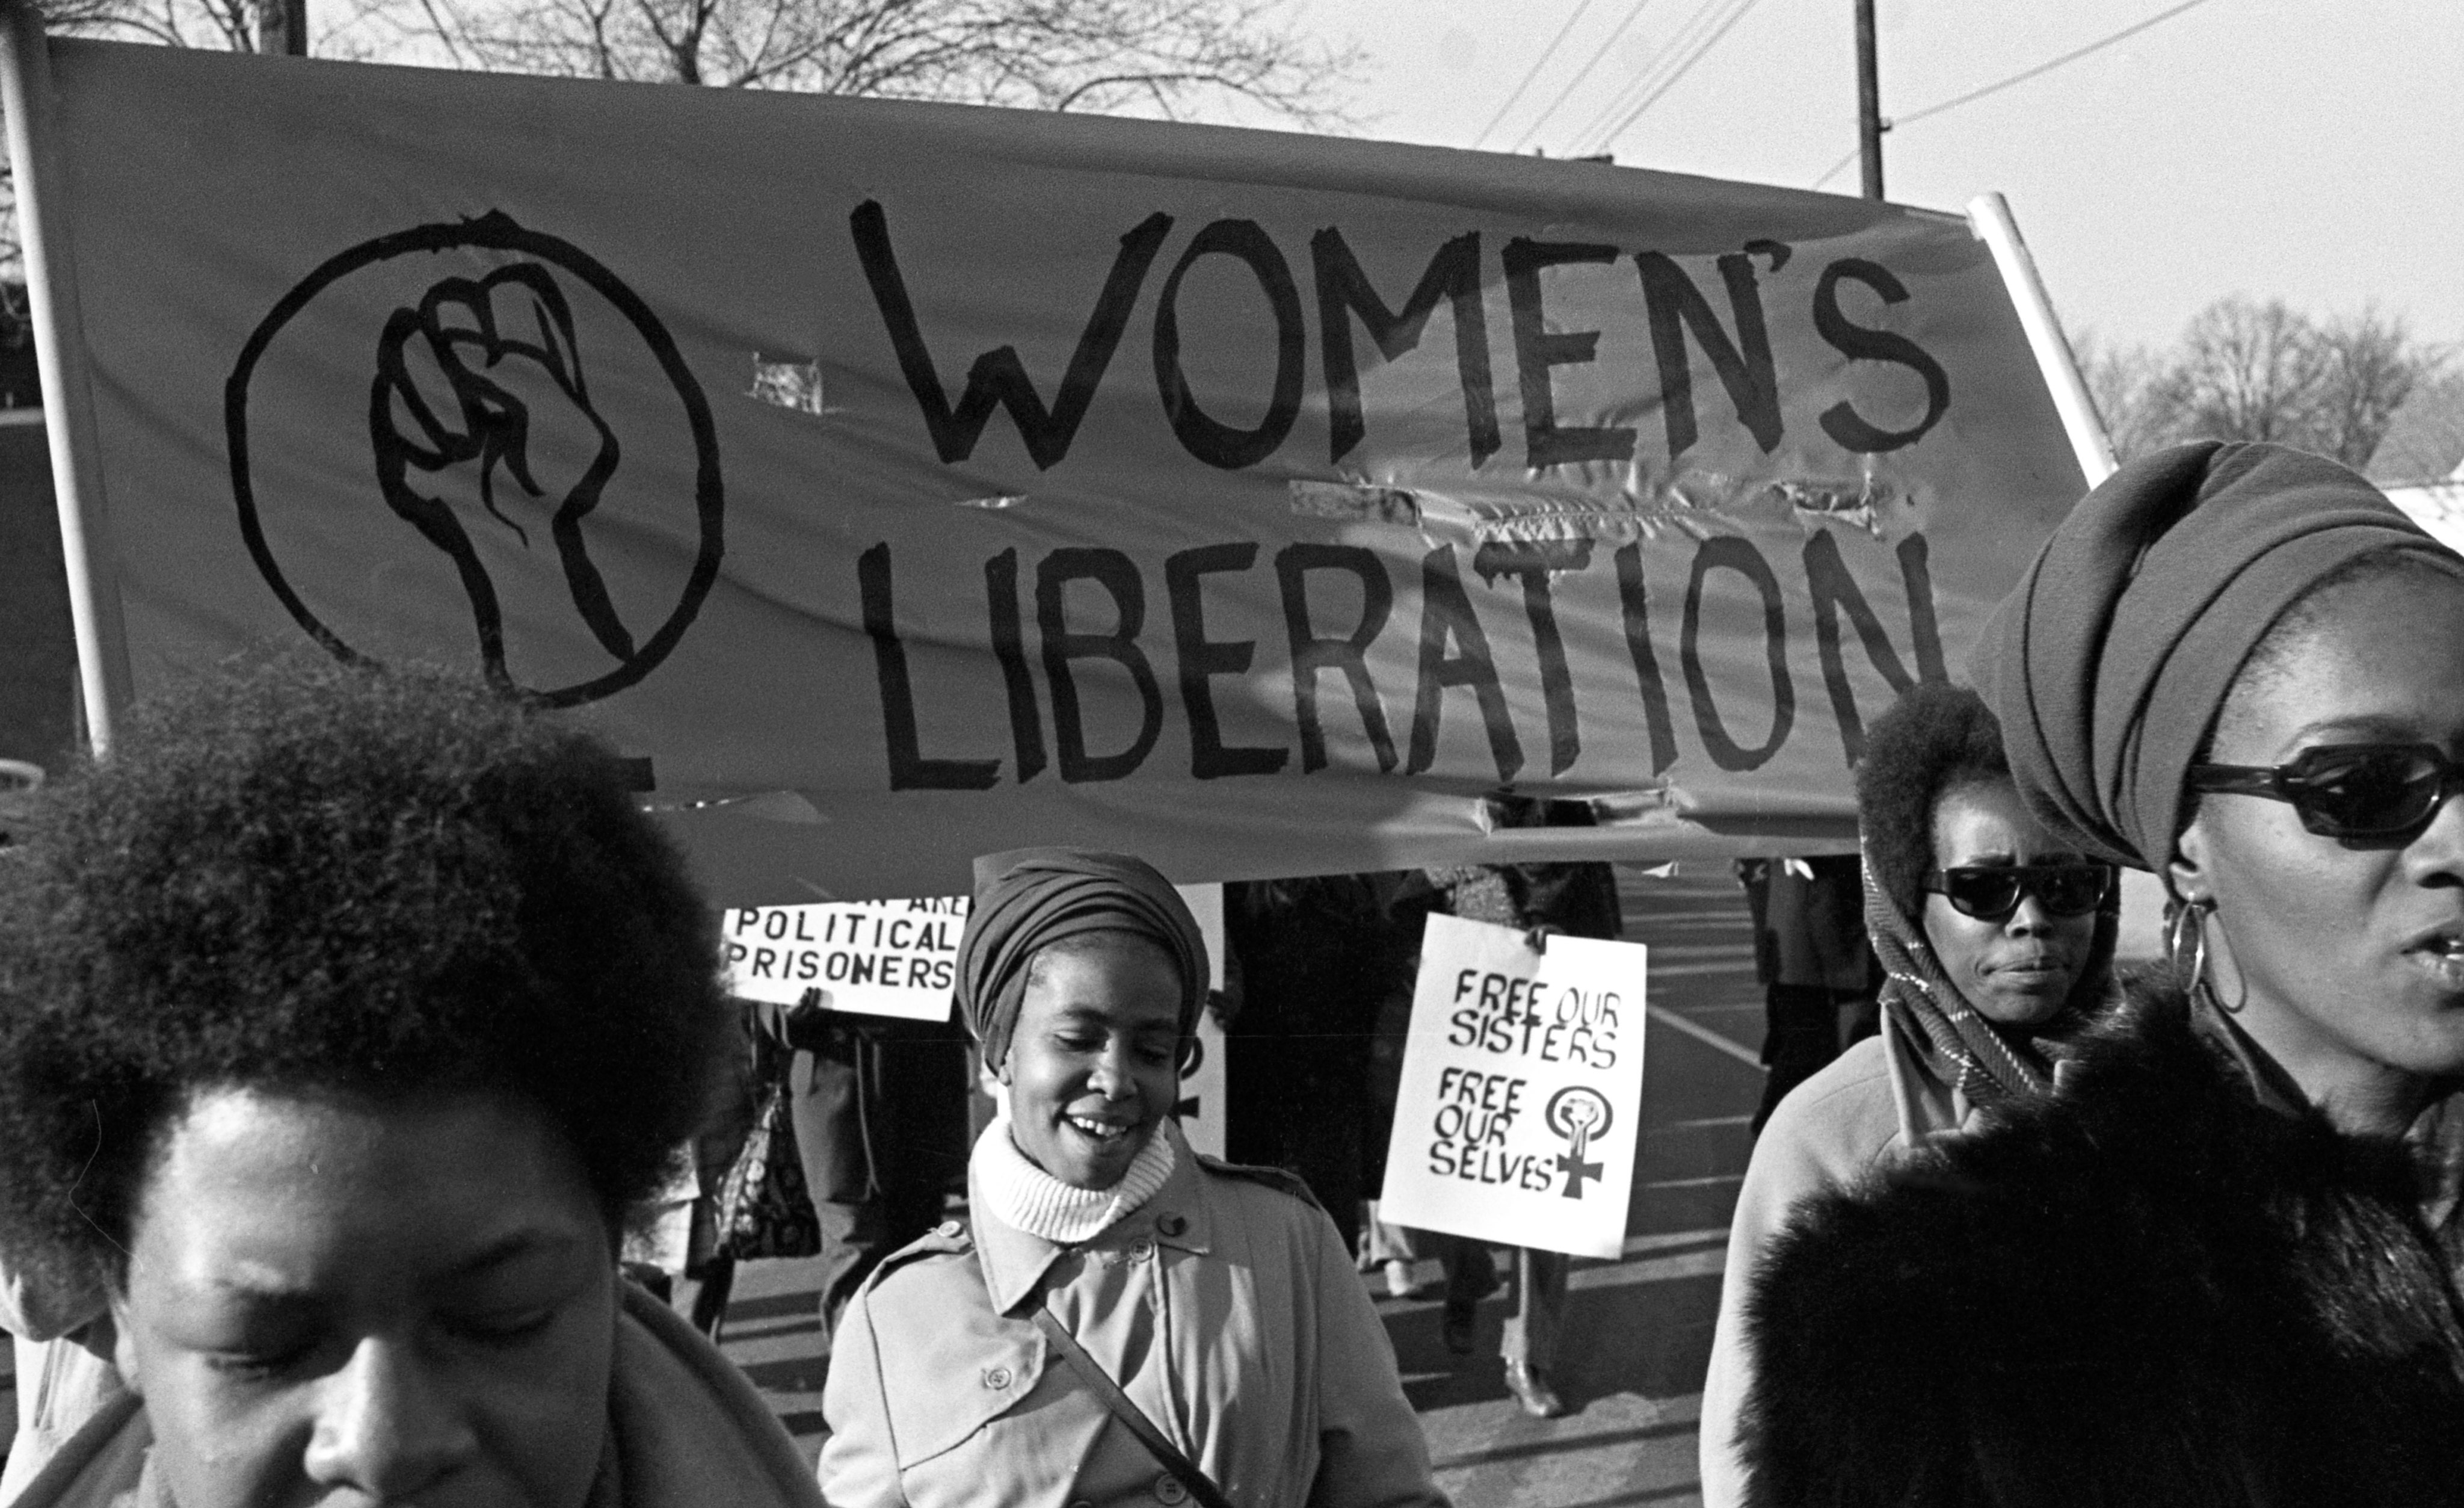 Muheres marcham em apoio ao partido Black Panthers (Panteras Negras), em New Haven, 1969